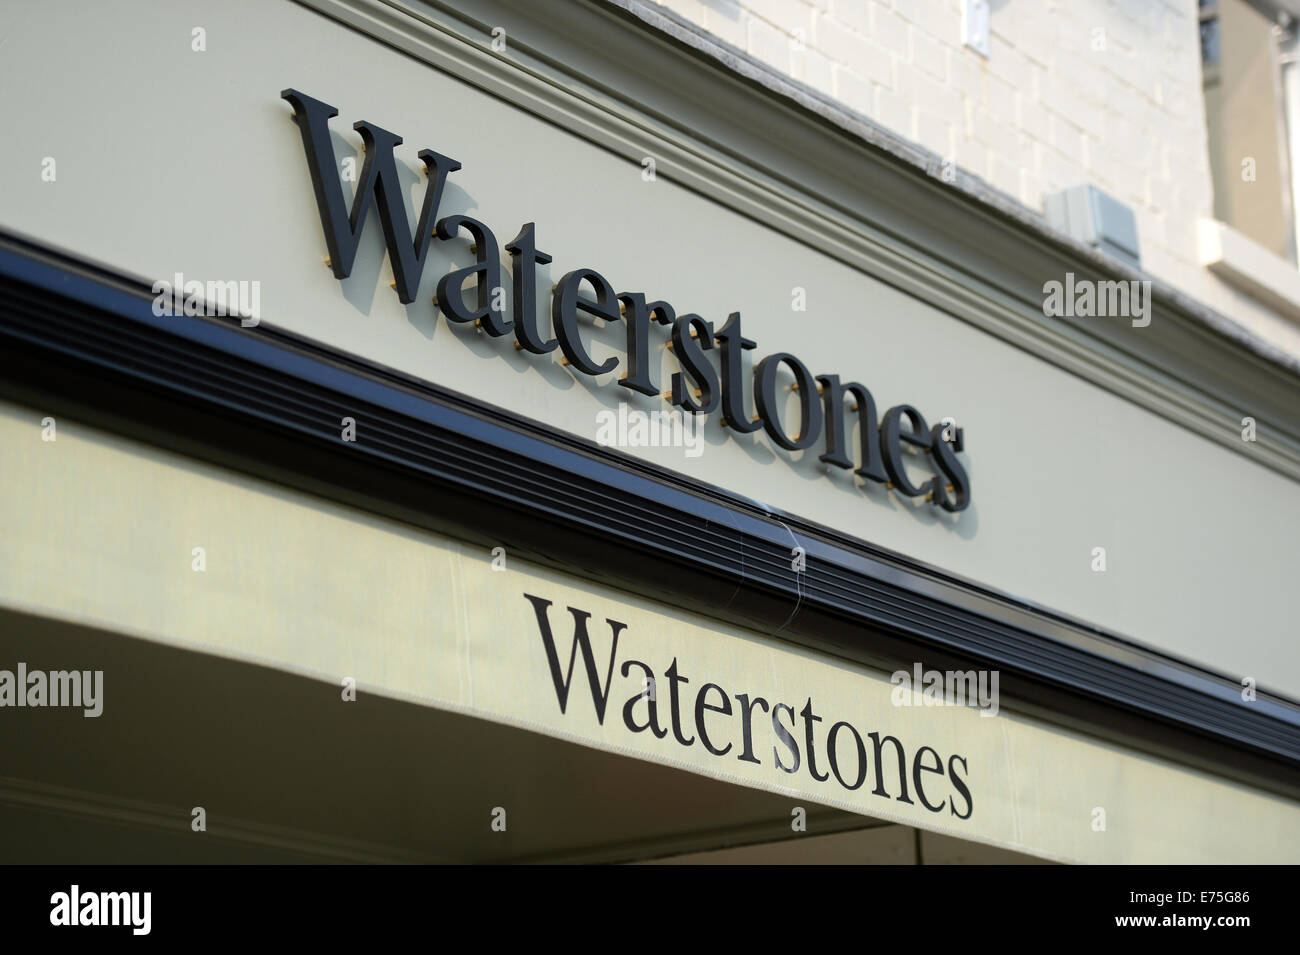 Waterstones book store, REGNO UNITO Foto Stock